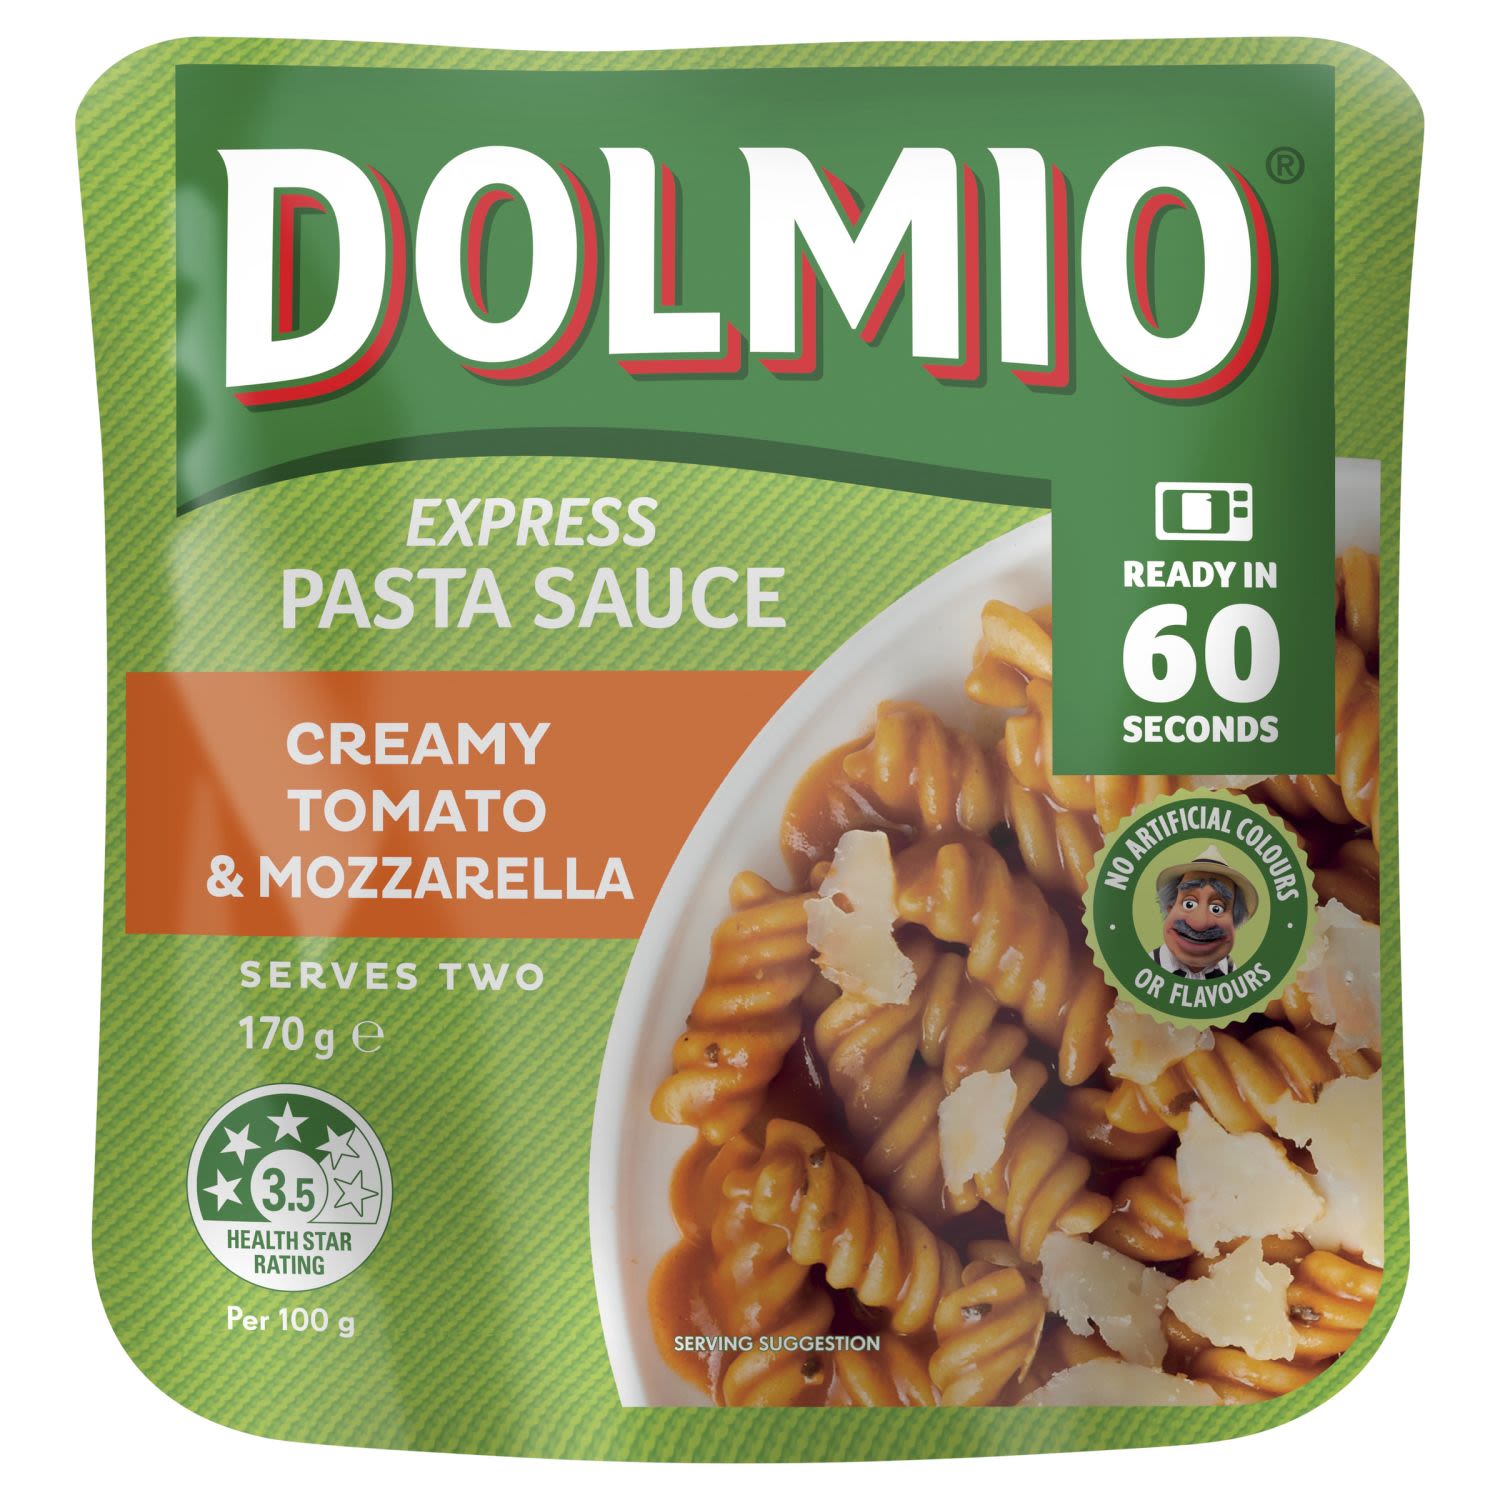 Dolmio Express Pasta Sauce Creamy Tomato & Mozzarella, 170 Gram